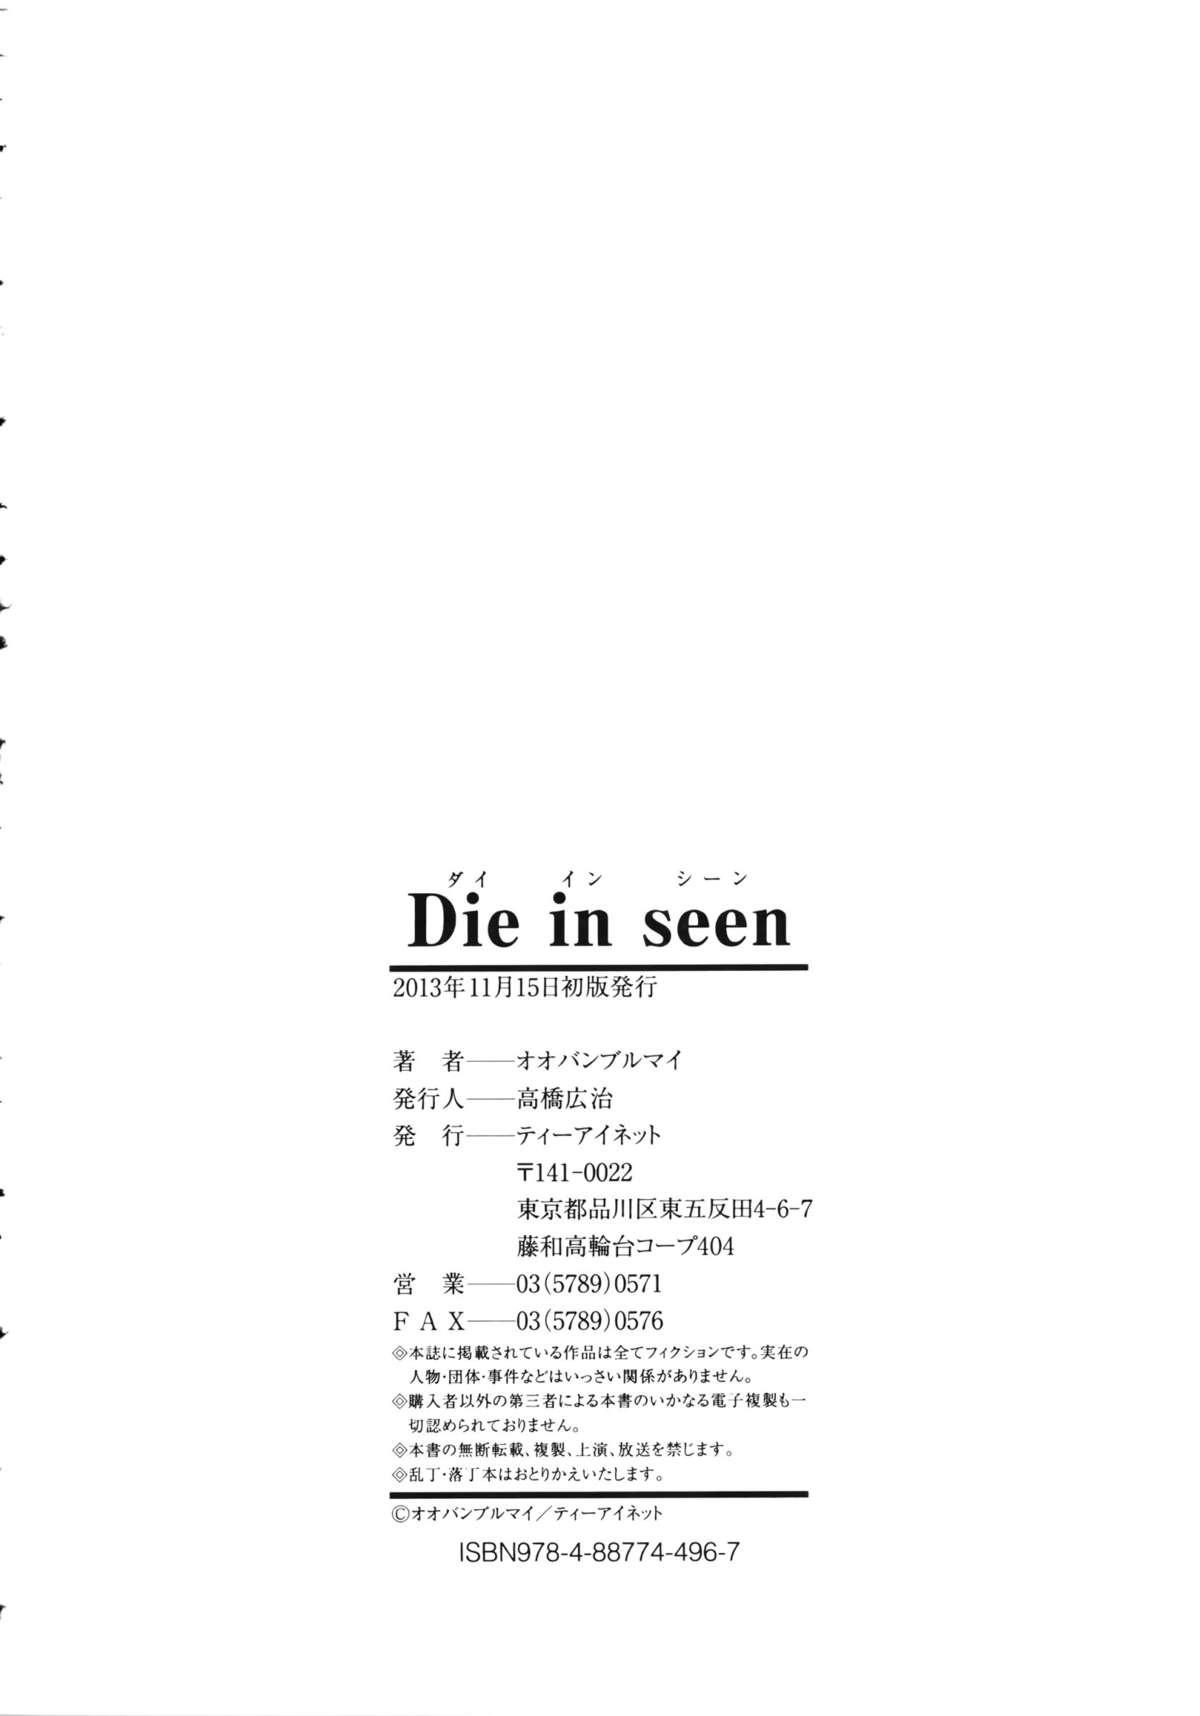 [オオバンブルマイ] Die in seen + ラフイラスト集・ページ, 複製原画